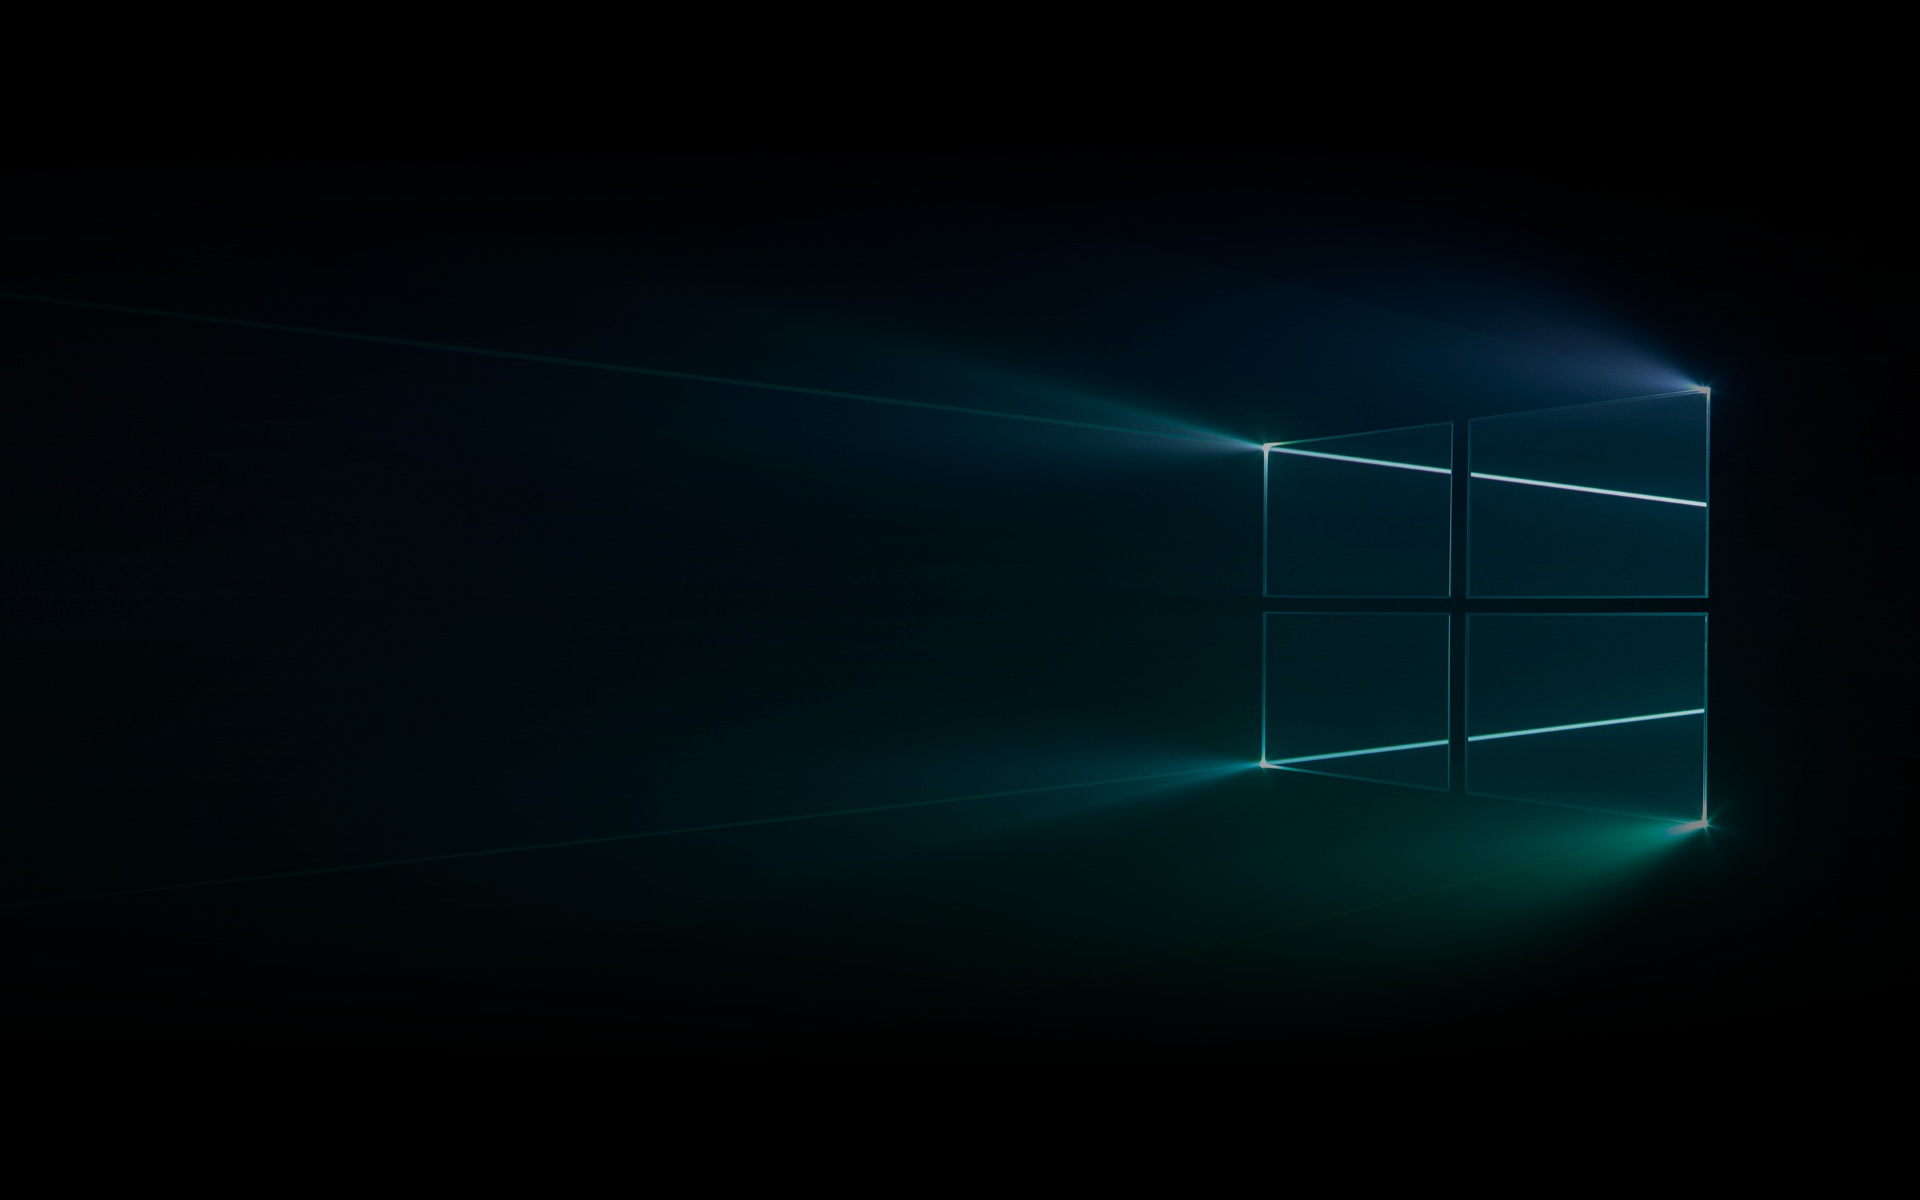 Hình nền Windows 10 đen tối và nổi bật được thiết kế đặc biệt để thích ứng với thị giác của bạn trong mọi tình huống. Để tìm hiểu thêm về hình nền đen đẹp mắt này, hãy xem ngay!